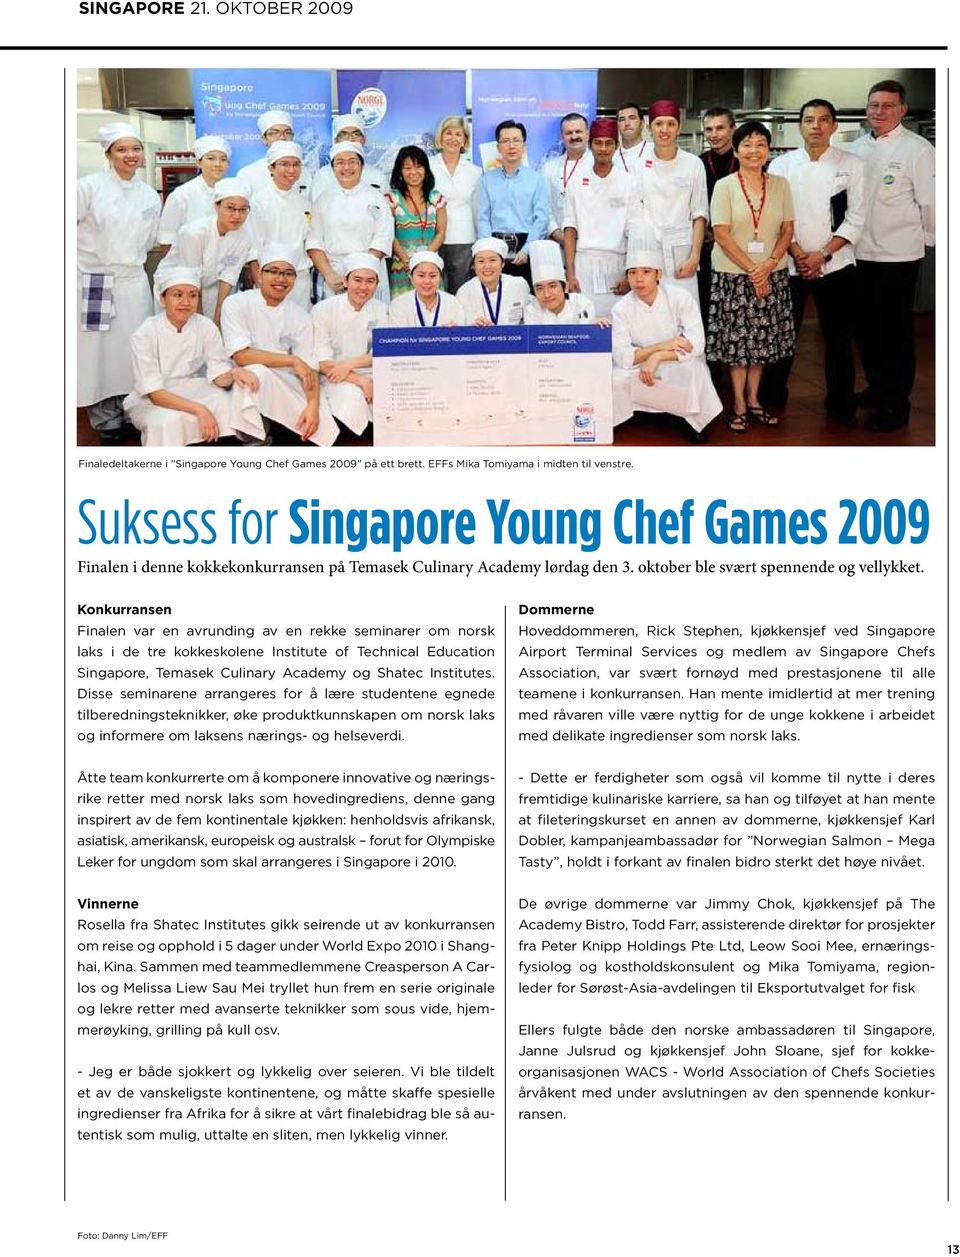 Konkurransen Finalen var en avrunding av en rekke seminarer om norsk laks i de tre kokkeskolene Institute of Technical Education Singapore, Temasek Culinary Academy og Shatec Institutes.